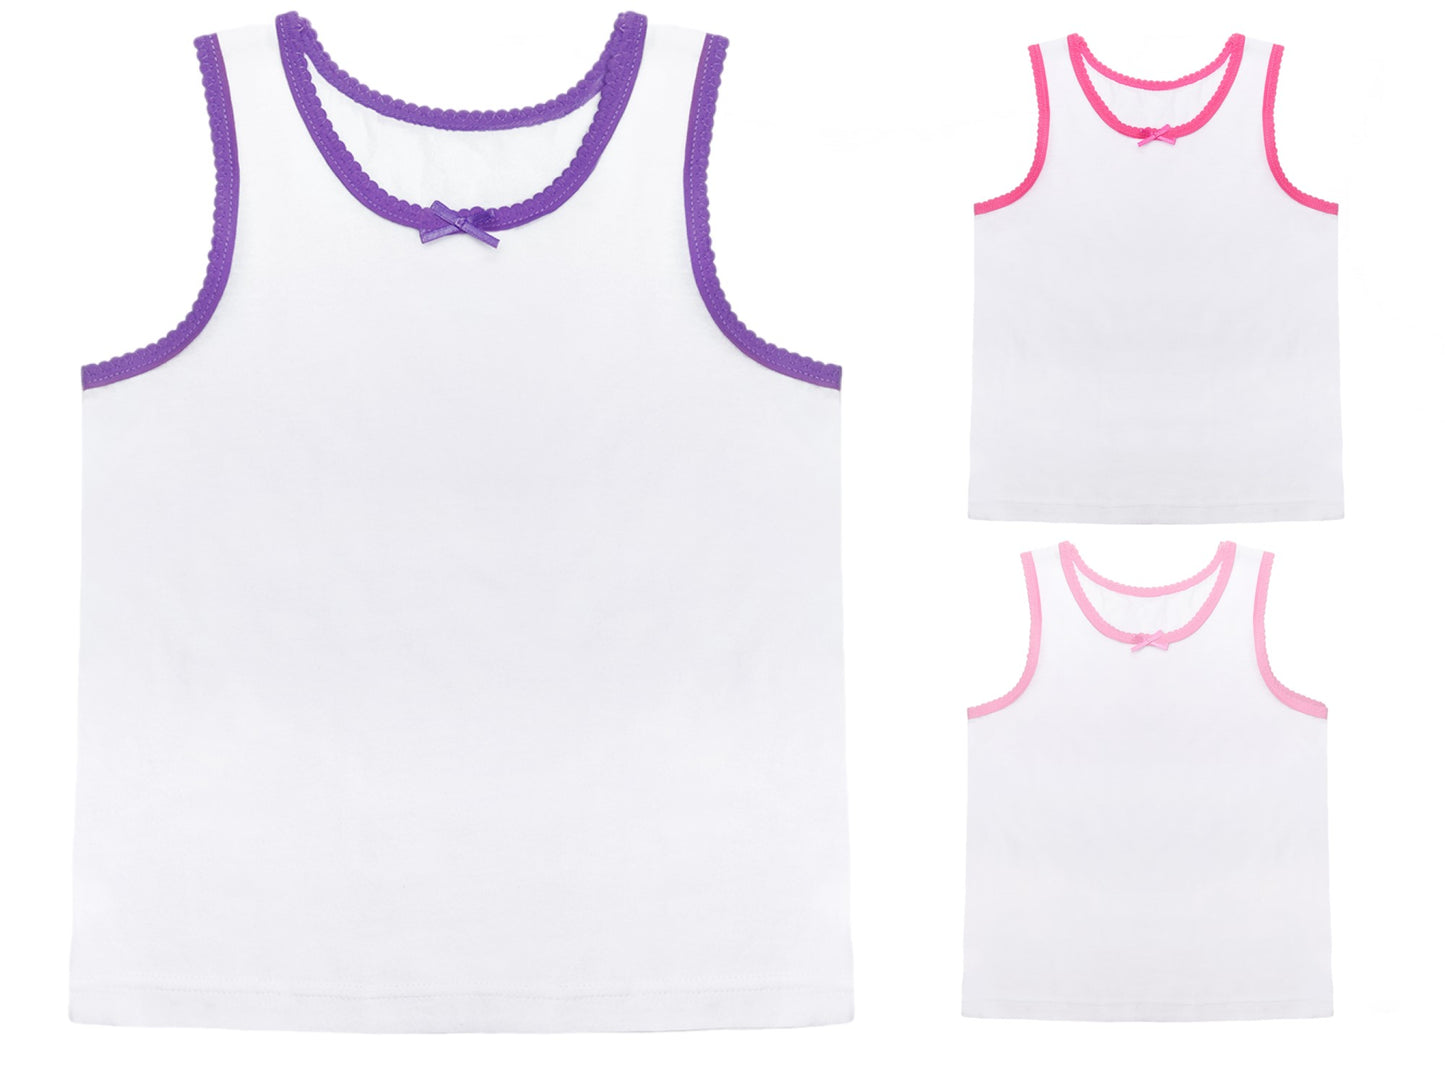 Girls' White Cotton Vests 3 Pack Kids Sleeveless Soft Jersey Underwear OEKO-TEX Certified